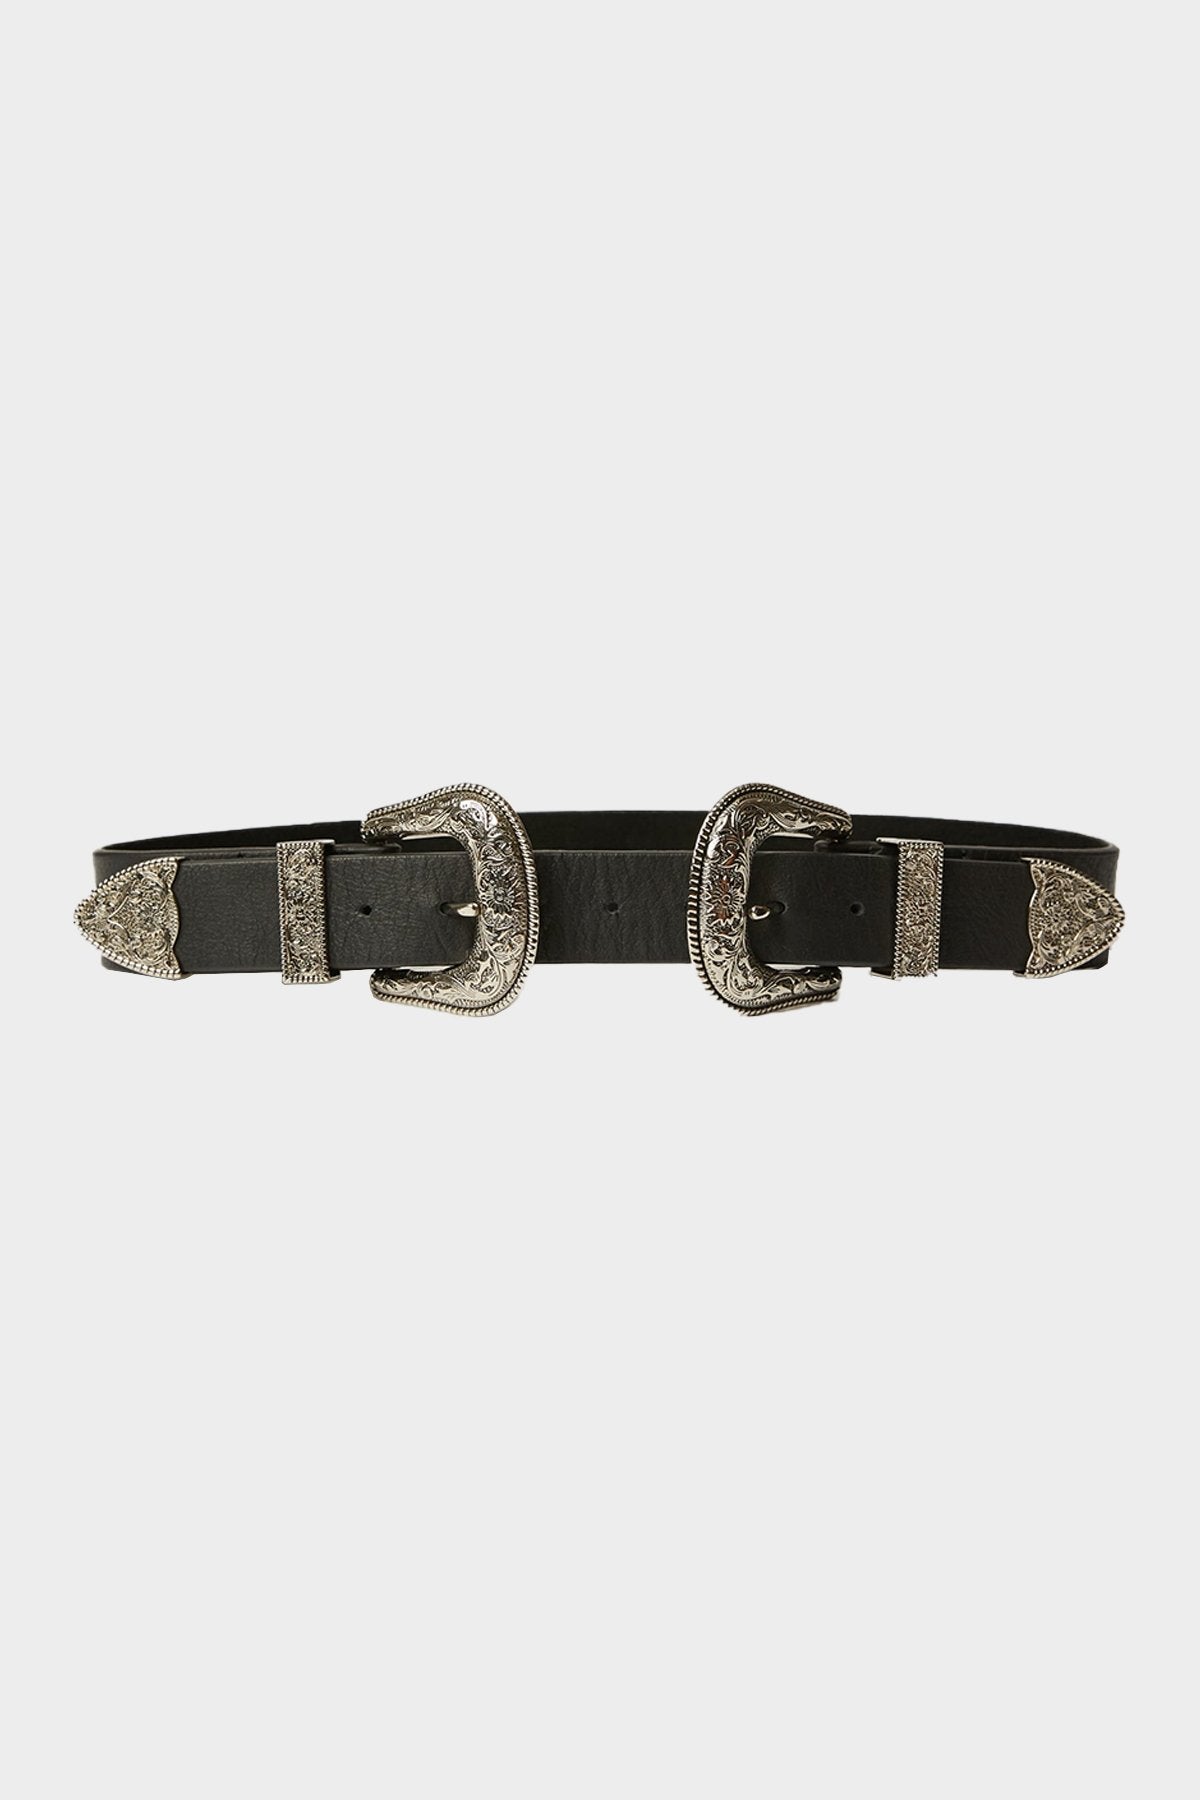 Bri Bri Leather Belt in Black Silver - shop-olivia.com